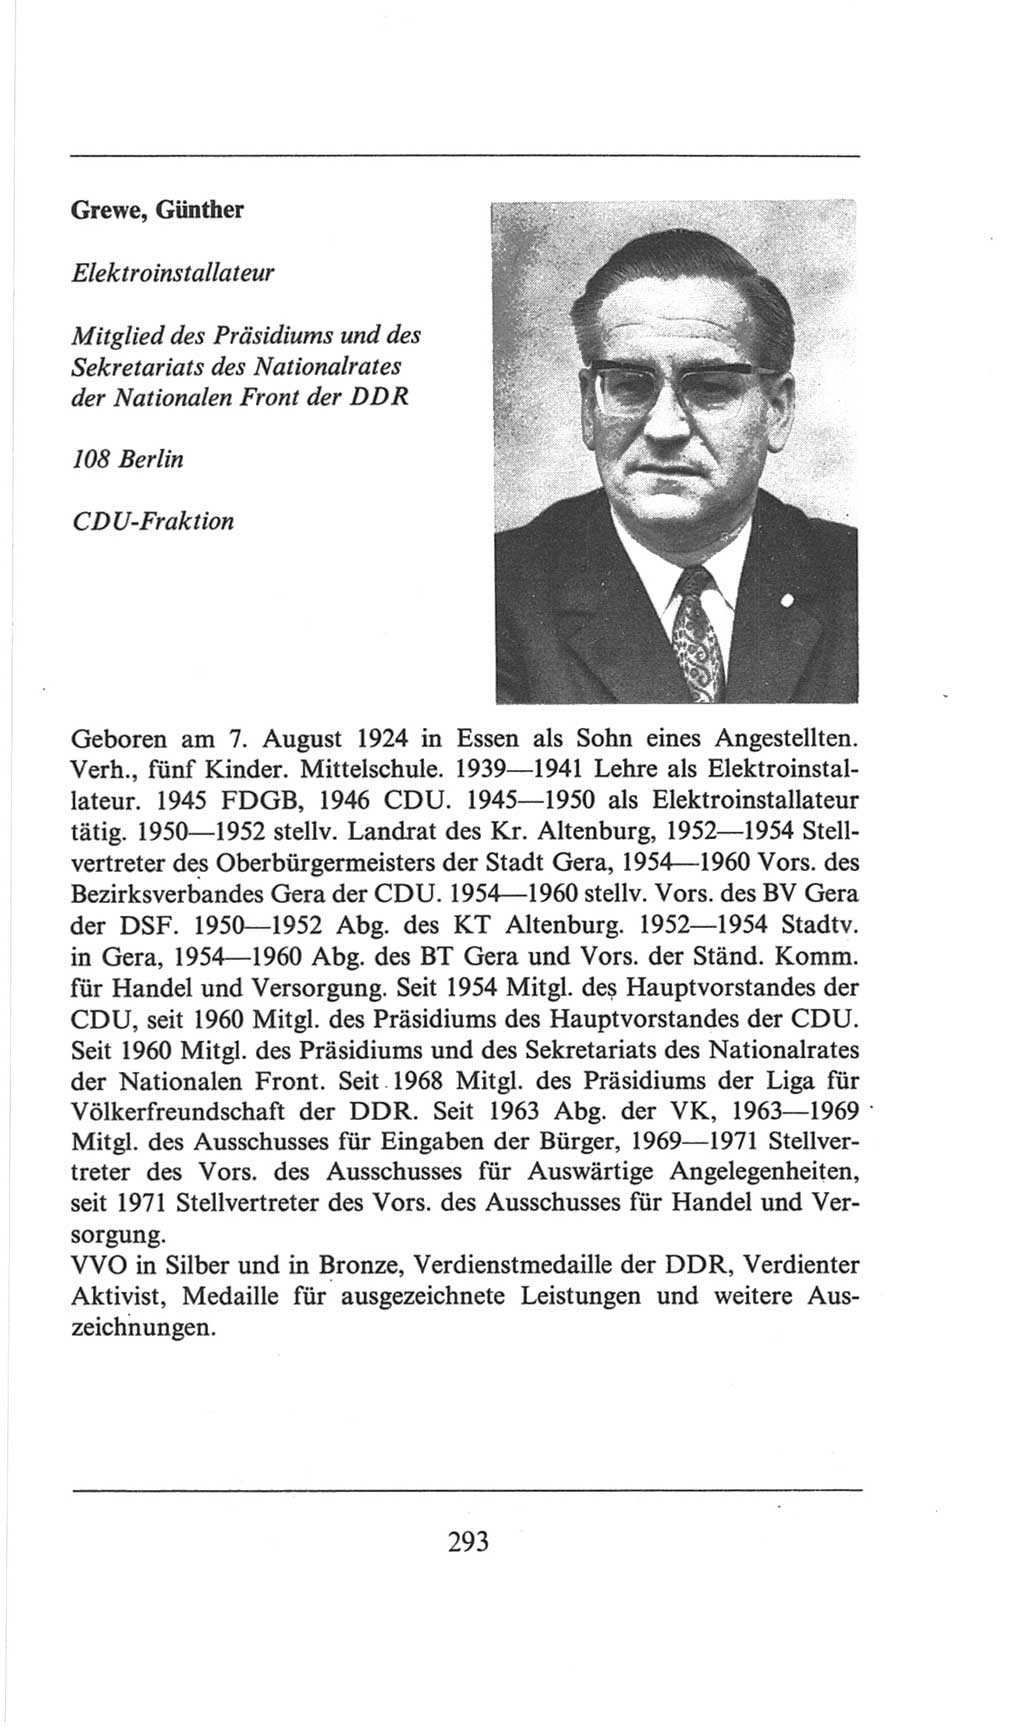 Volkskammer (VK) der Deutschen Demokratischen Republik (DDR), 6. Wahlperiode 1971-1976, Seite 293 (VK. DDR 6. WP. 1971-1976, S. 293)